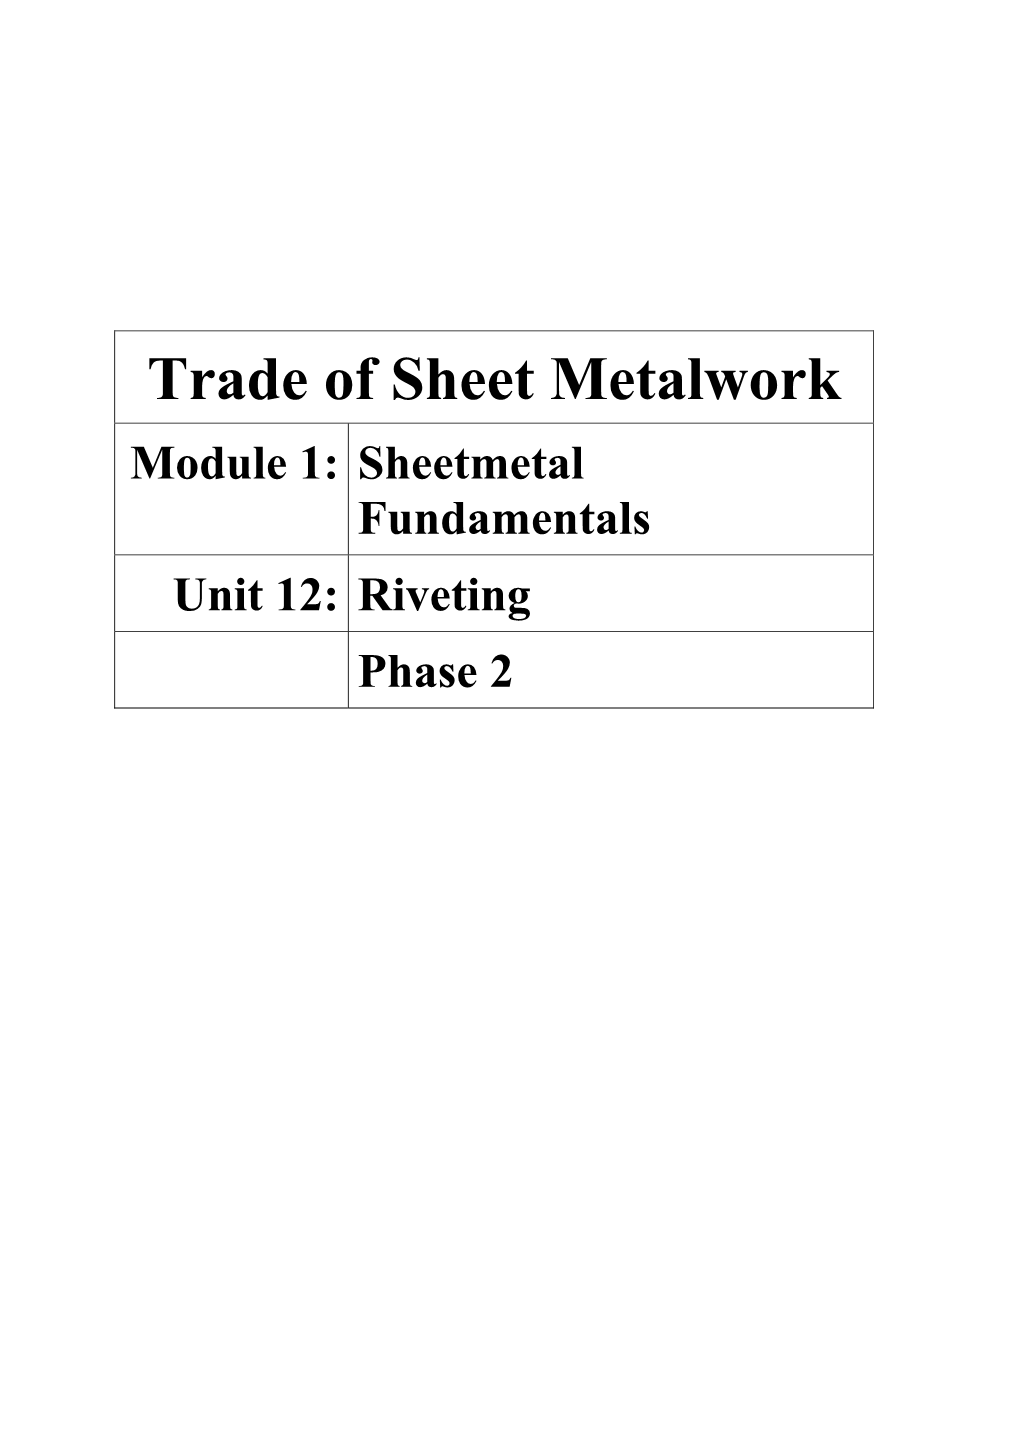 Sheetmetal Fundamentals Unit 12: Riveting Phase 2